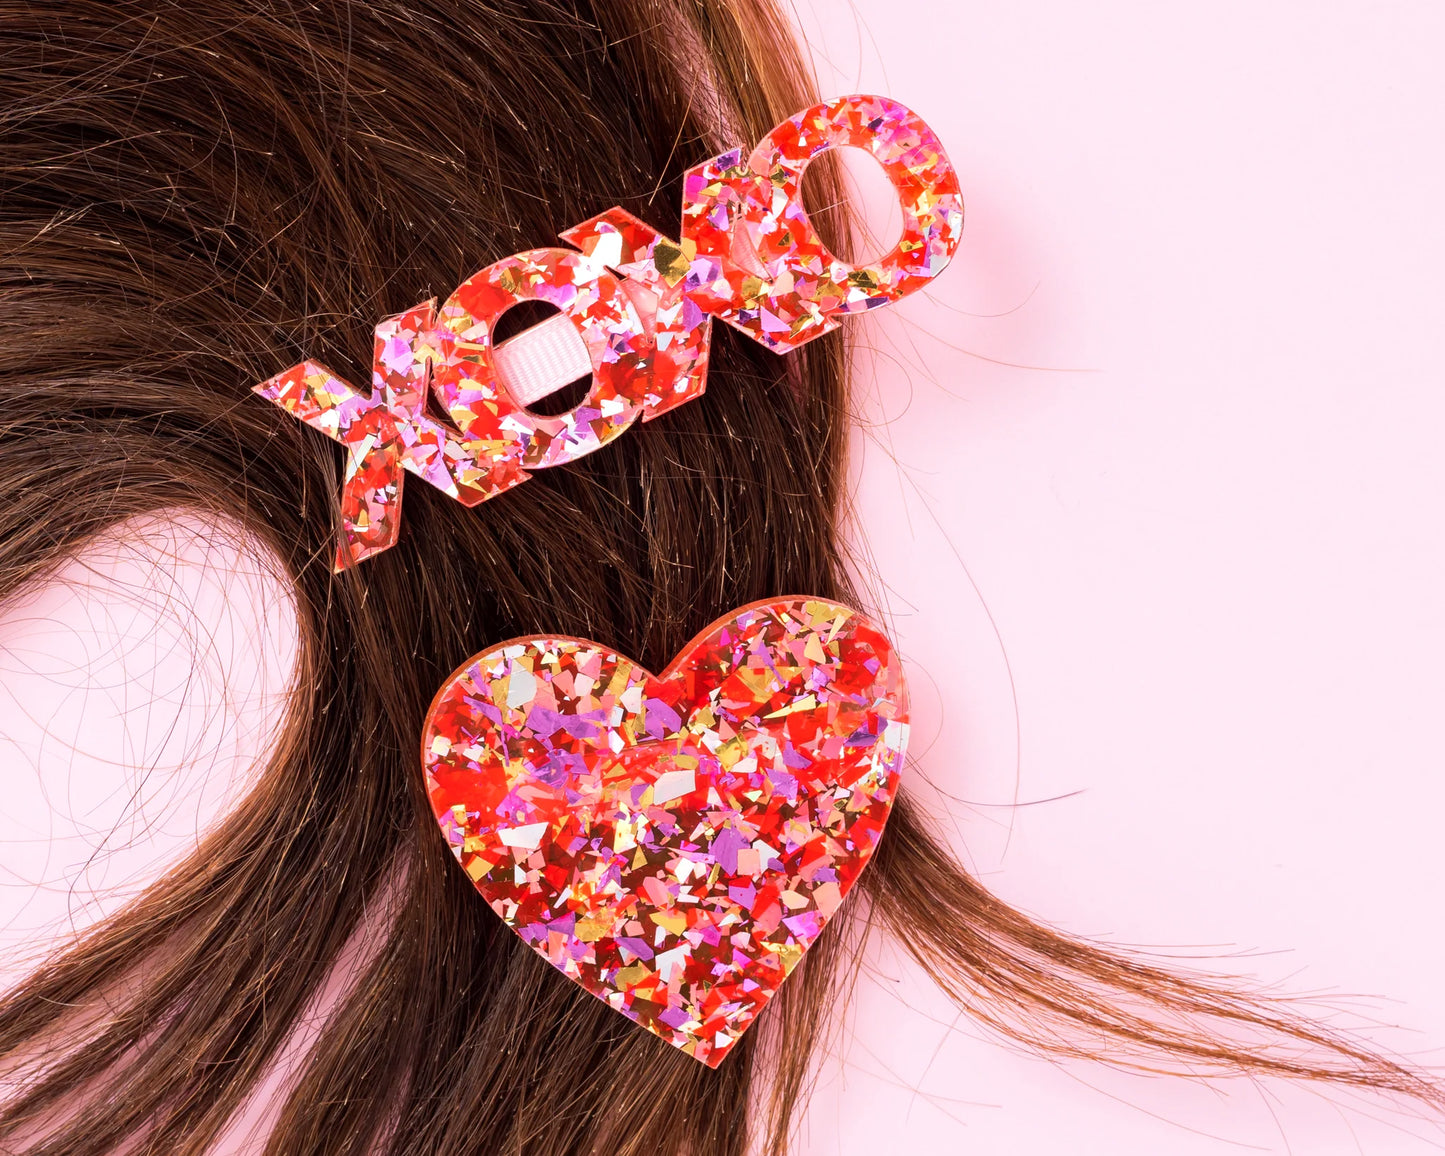 XOXO hair clip